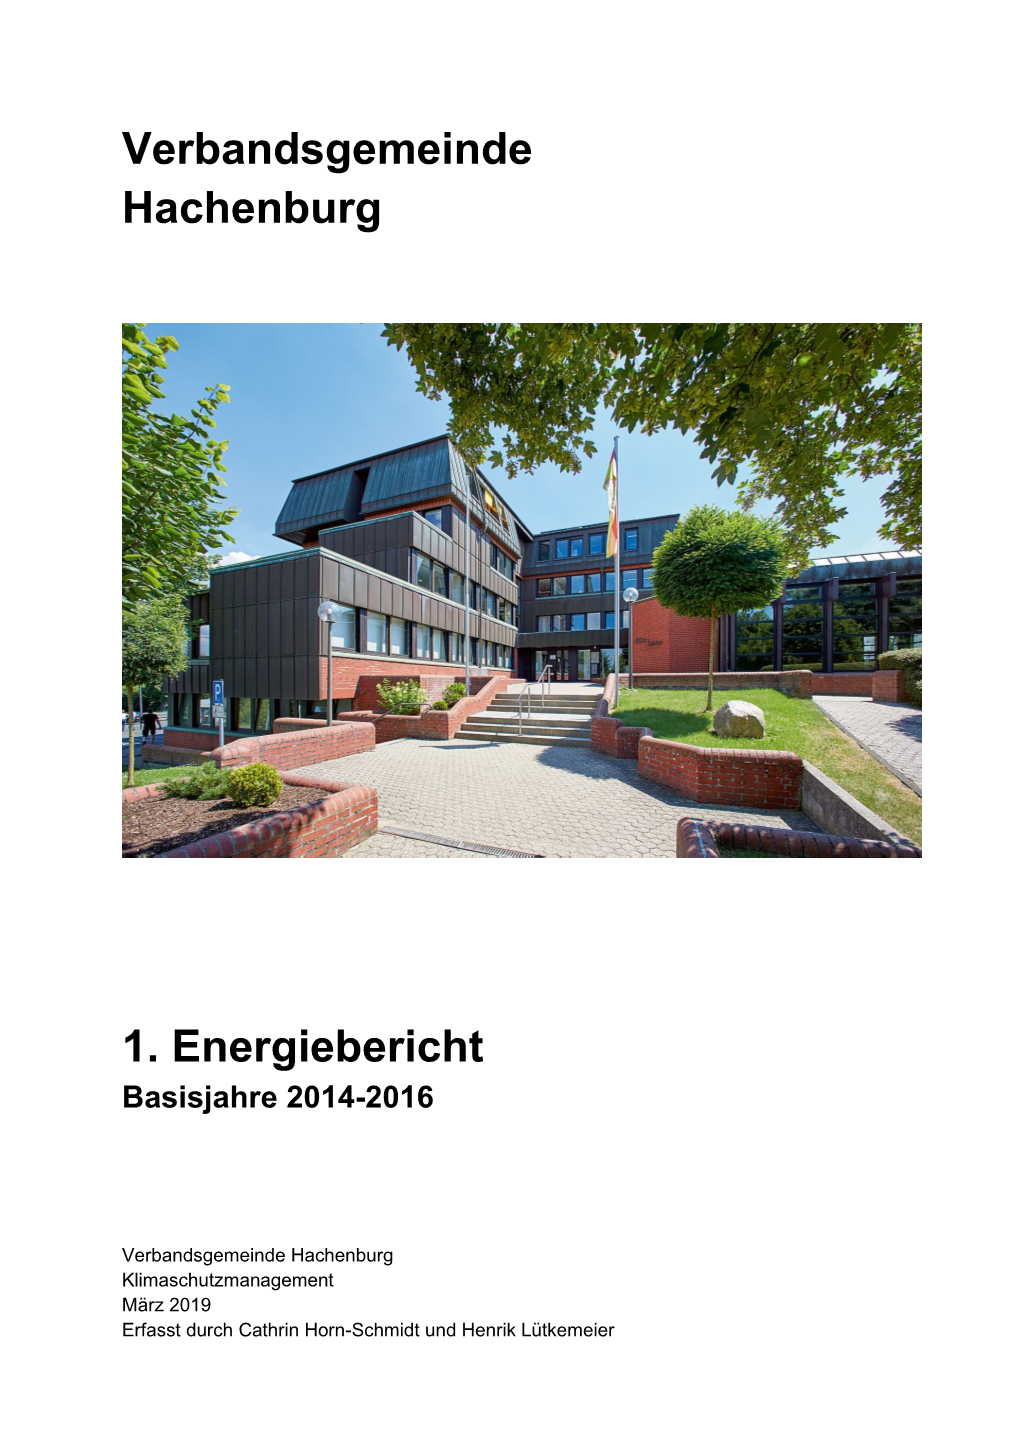 Verbandsgemeinde Hachenburg 1. Energiebericht